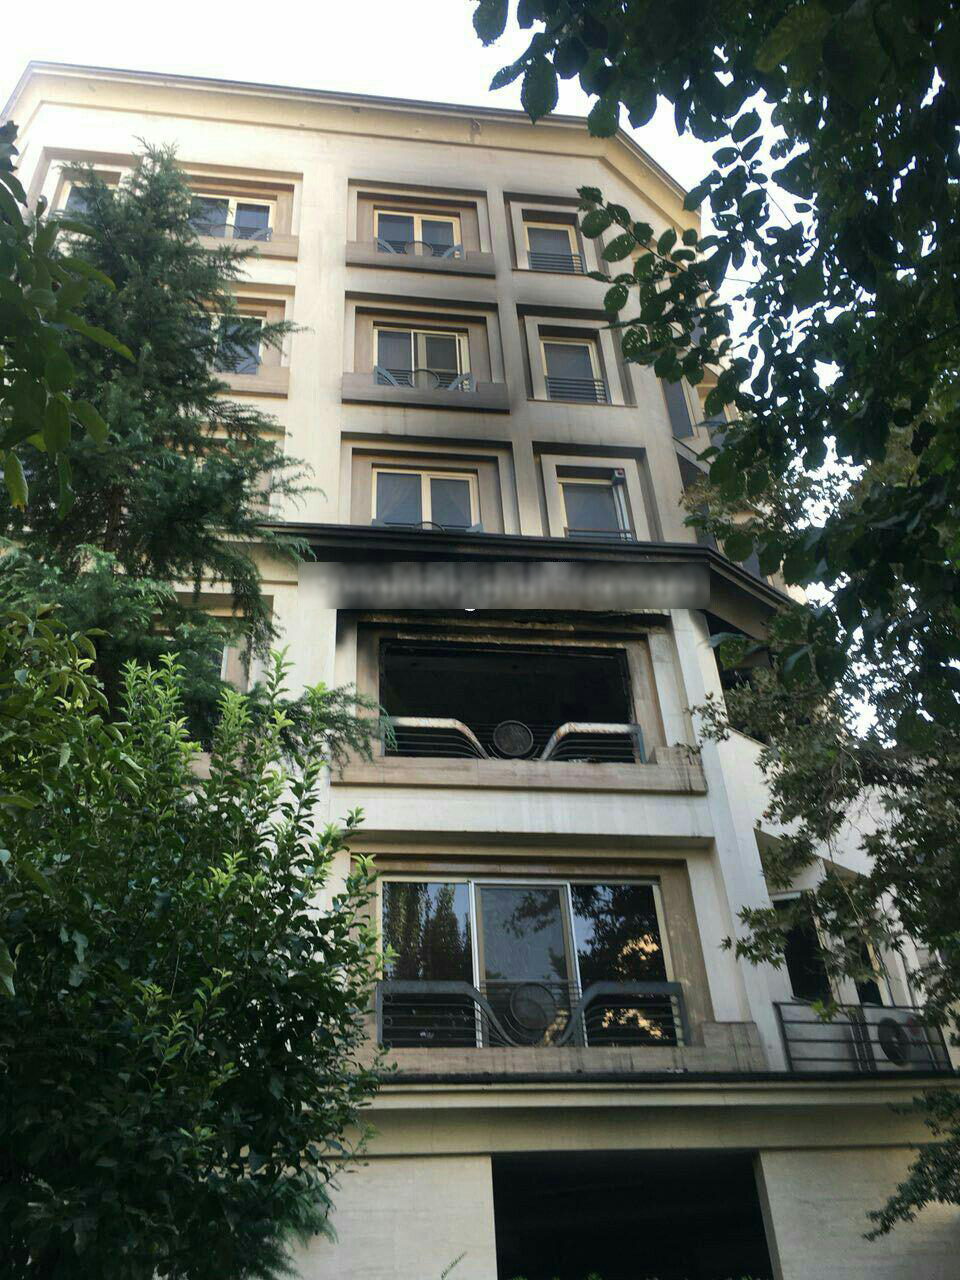 آتش سوزی در ساختمان ۵ طبقه در کامرانیه + تصاویر 